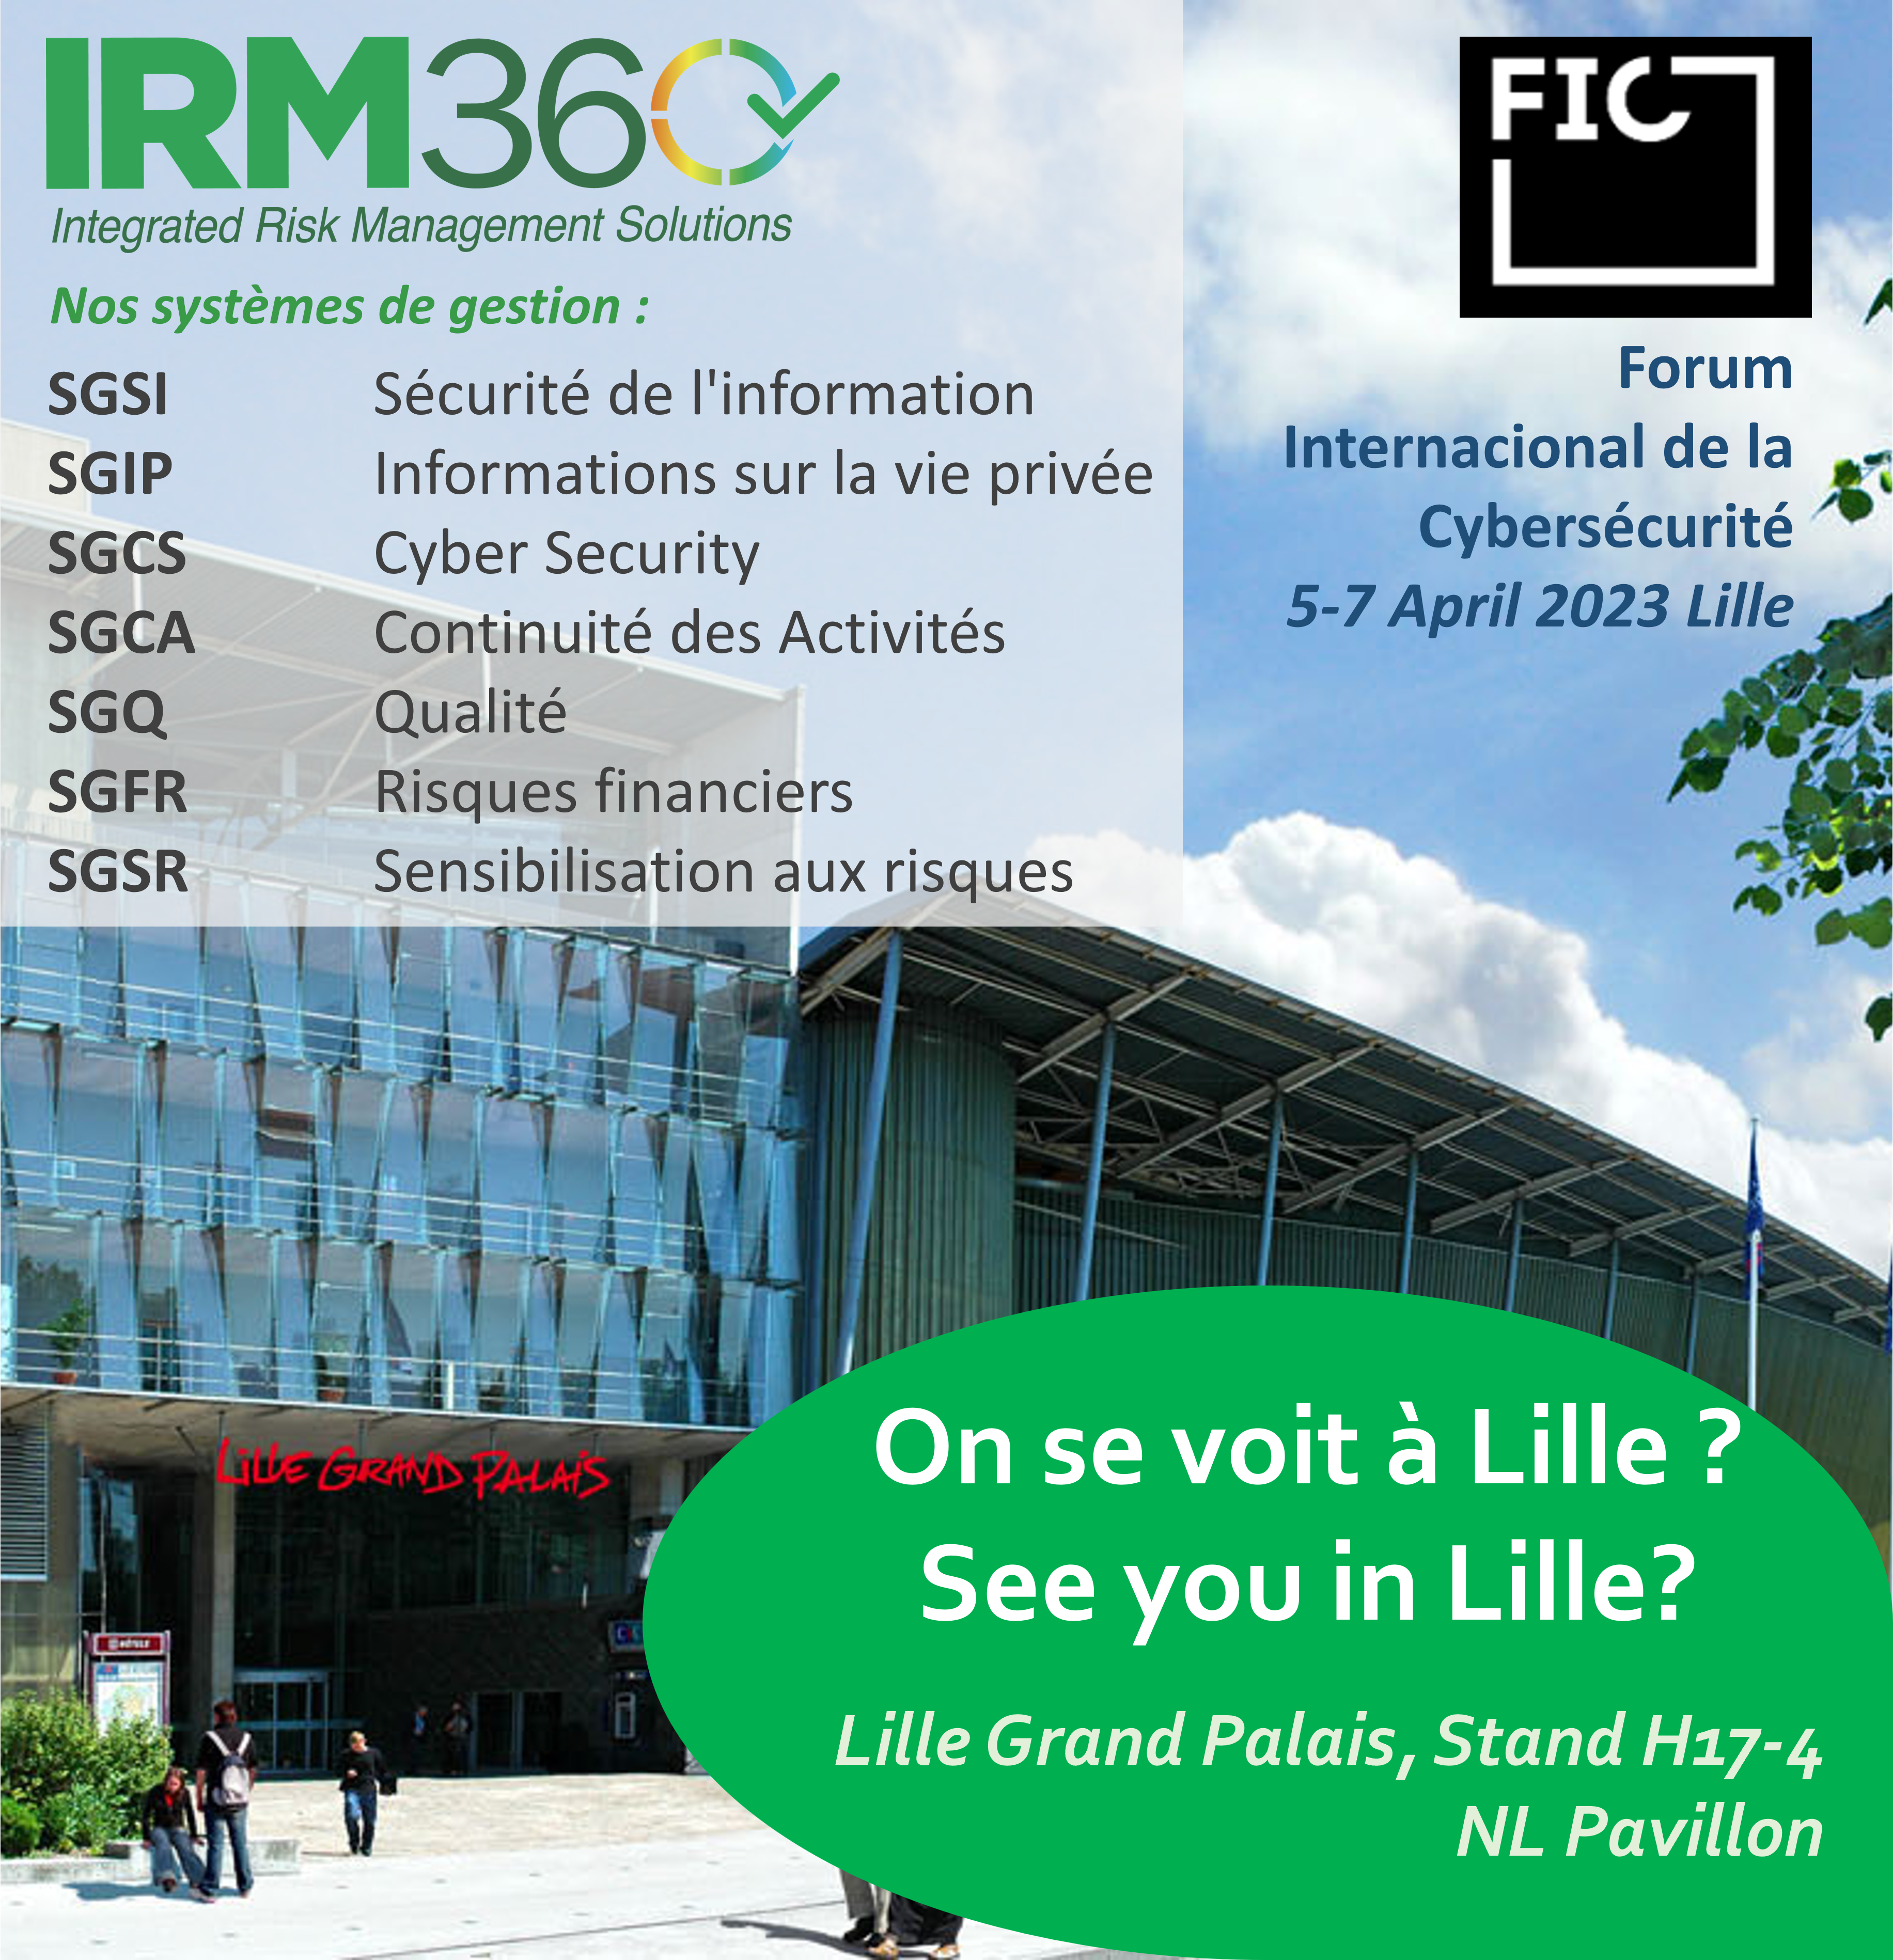 IRM360 presente al FIC di Lille